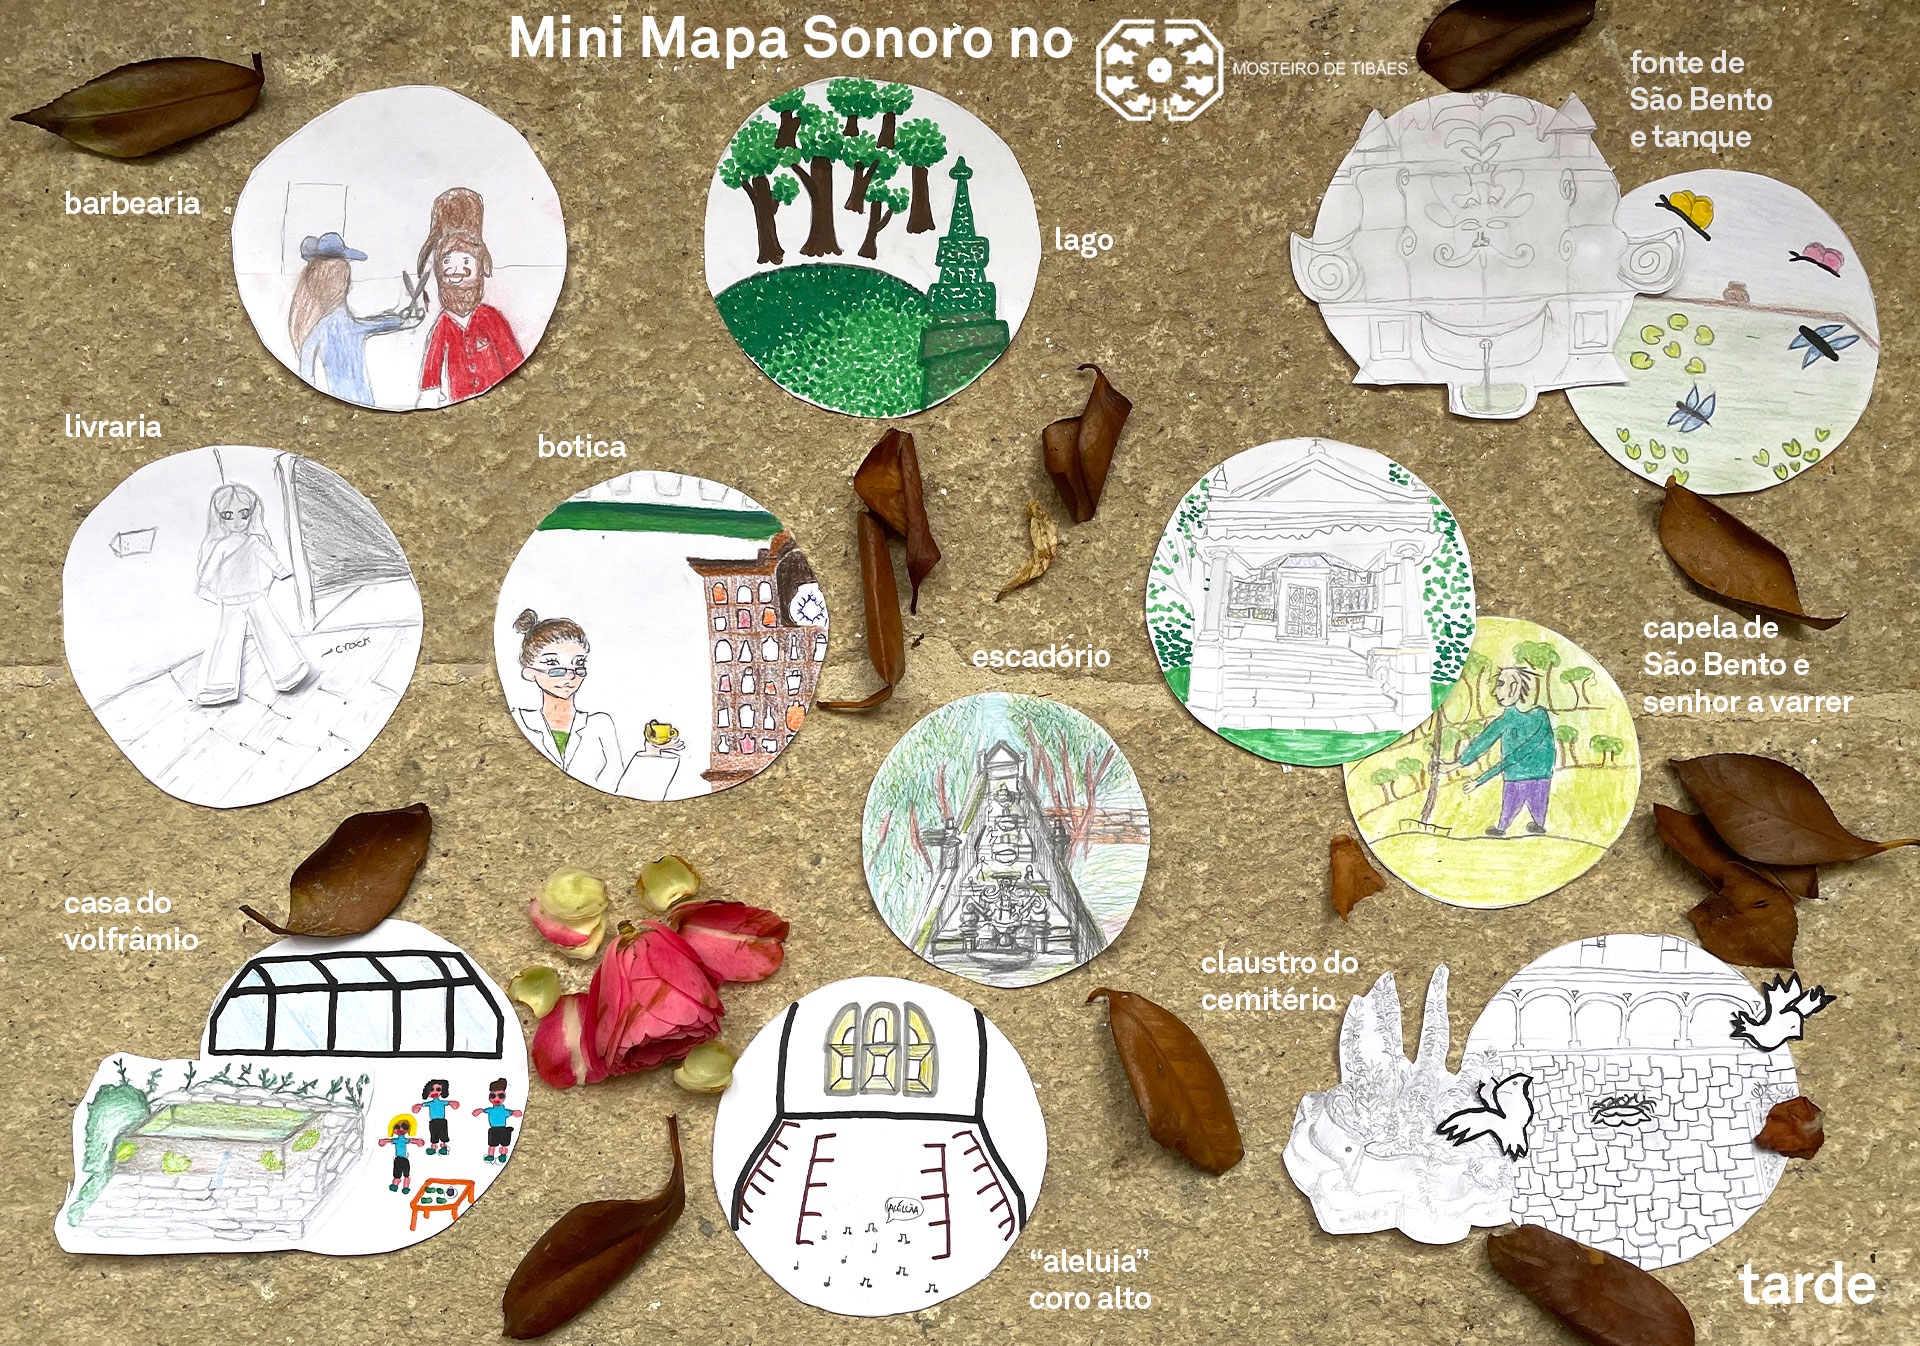 Mapa Mini Mapa Sonoro Mini Mapa Sonoro no Mosteiro de Tibães - Escola Básica de Palmeira